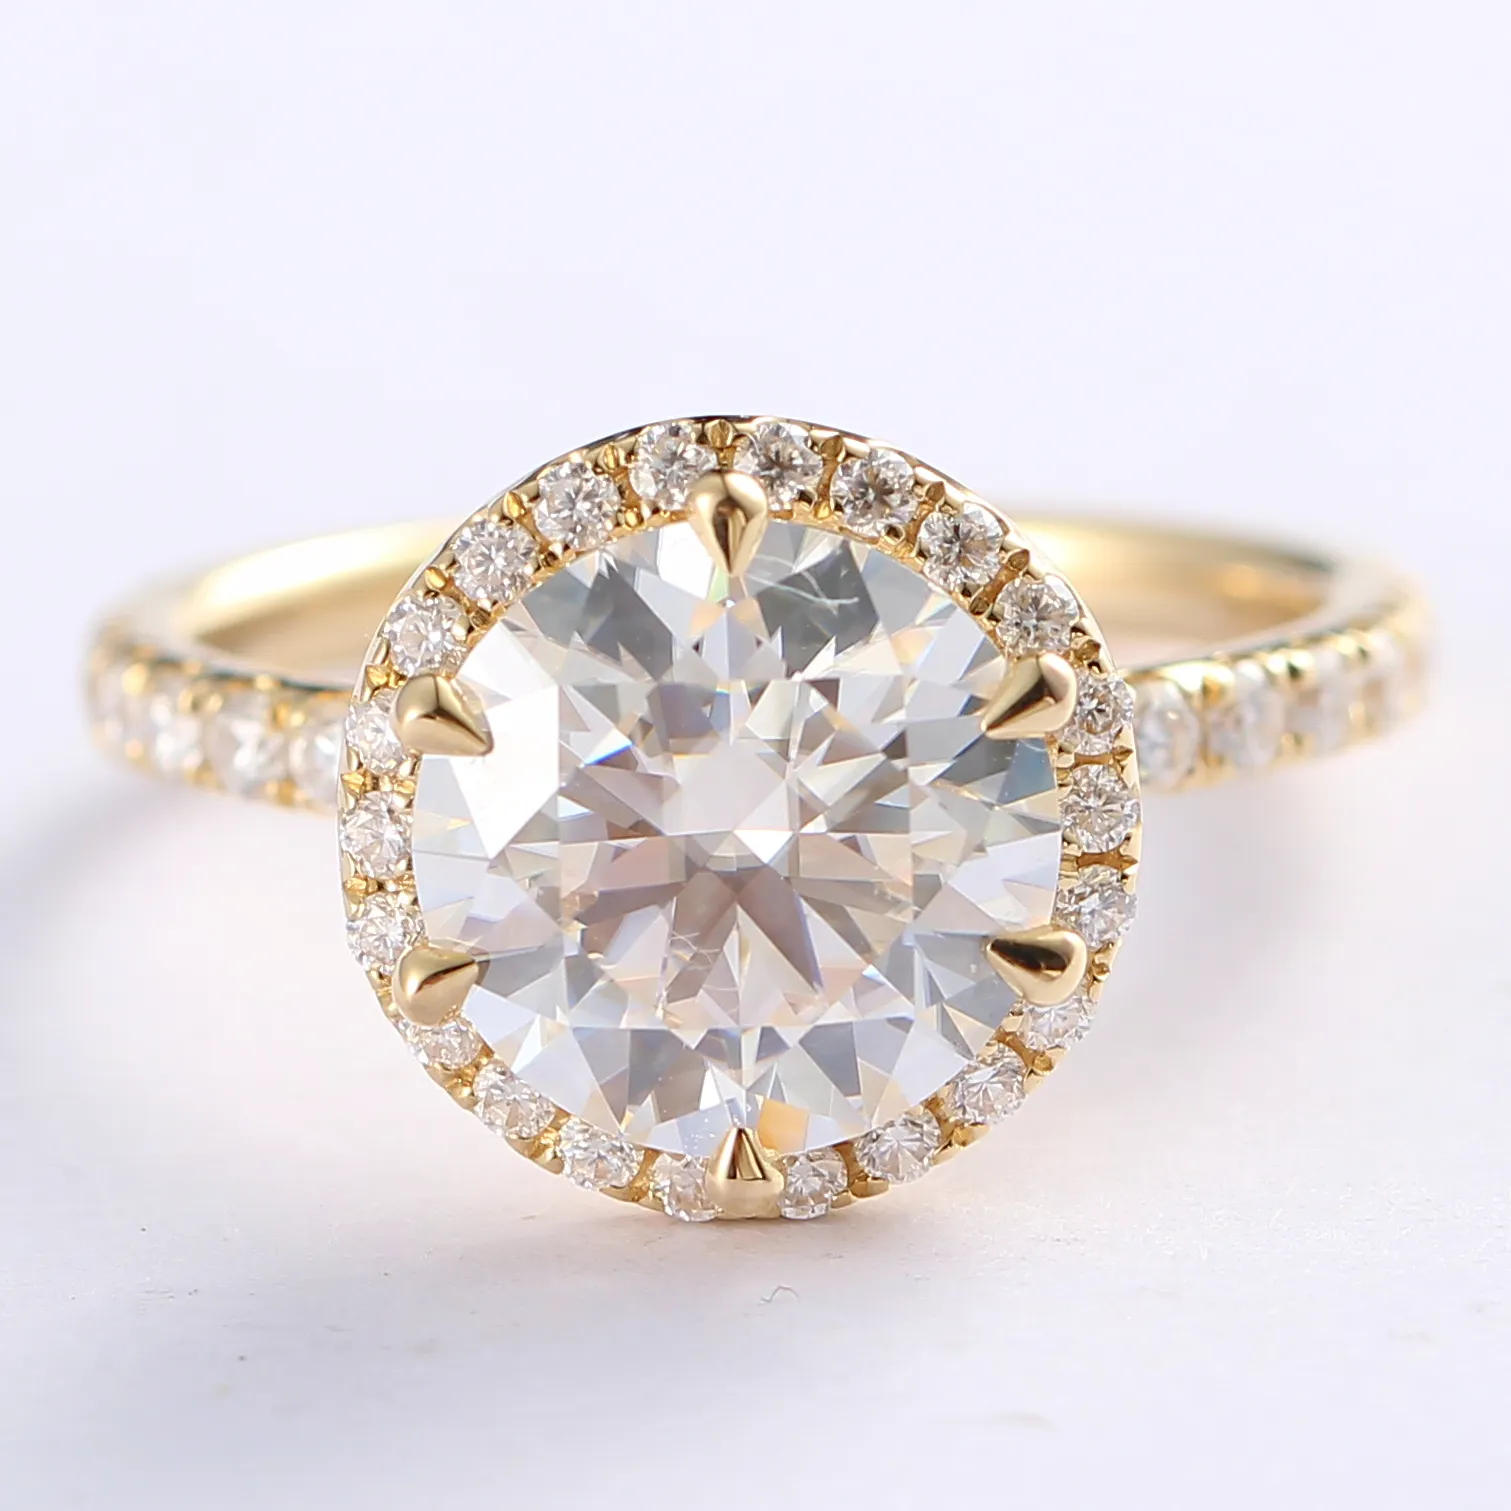 チャイニーズジェムズ新製品カラフルなミニマリズム結婚指輪婚約指輪14/18kゴールドモアッサナイトダイヤモンドリング